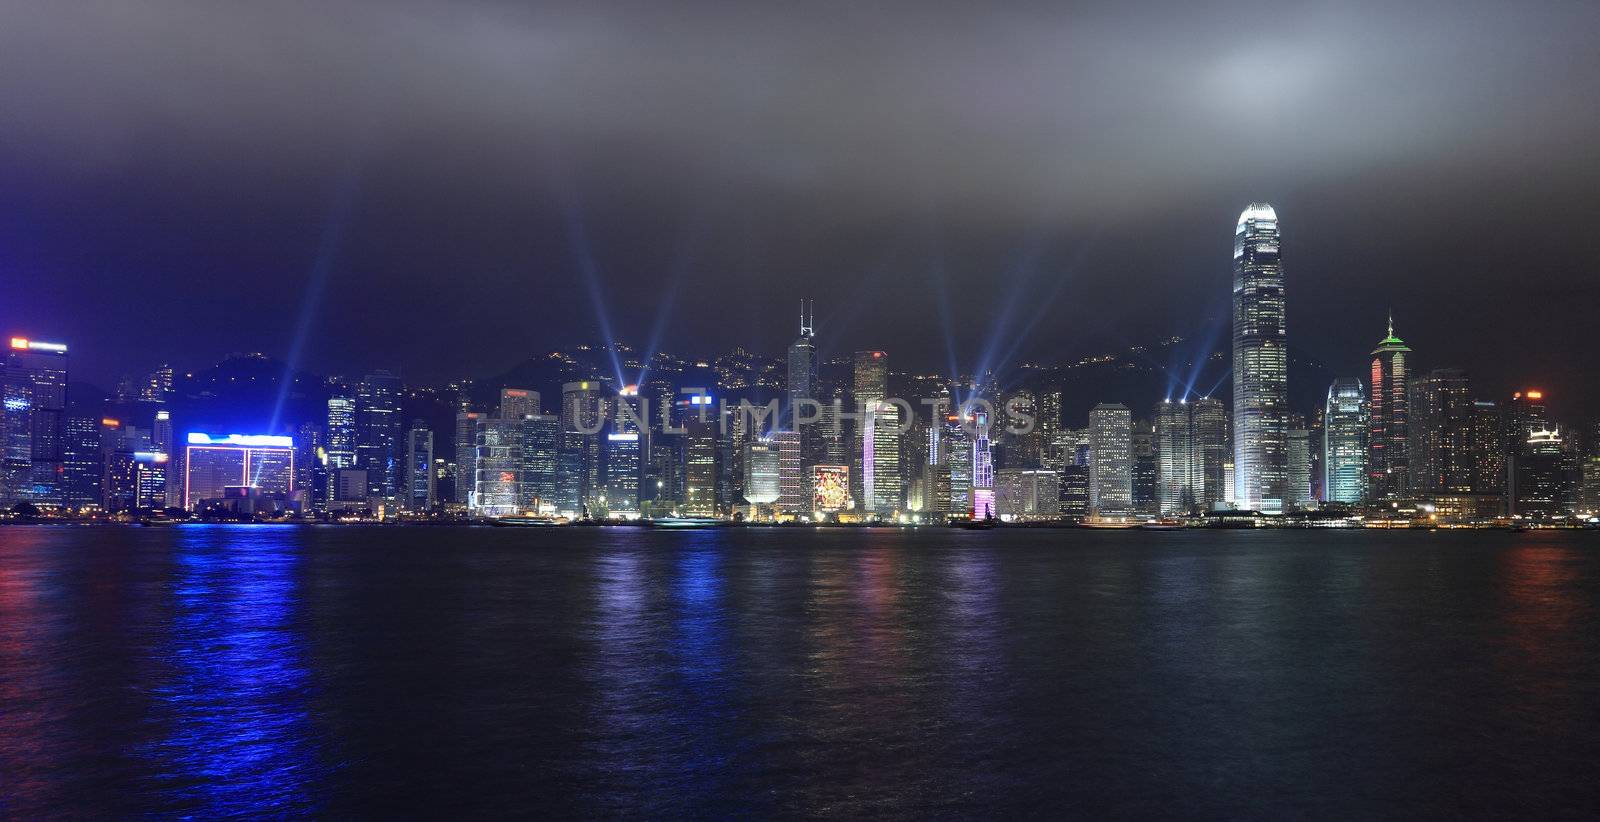 lights show in Hong Kong by leungchopan